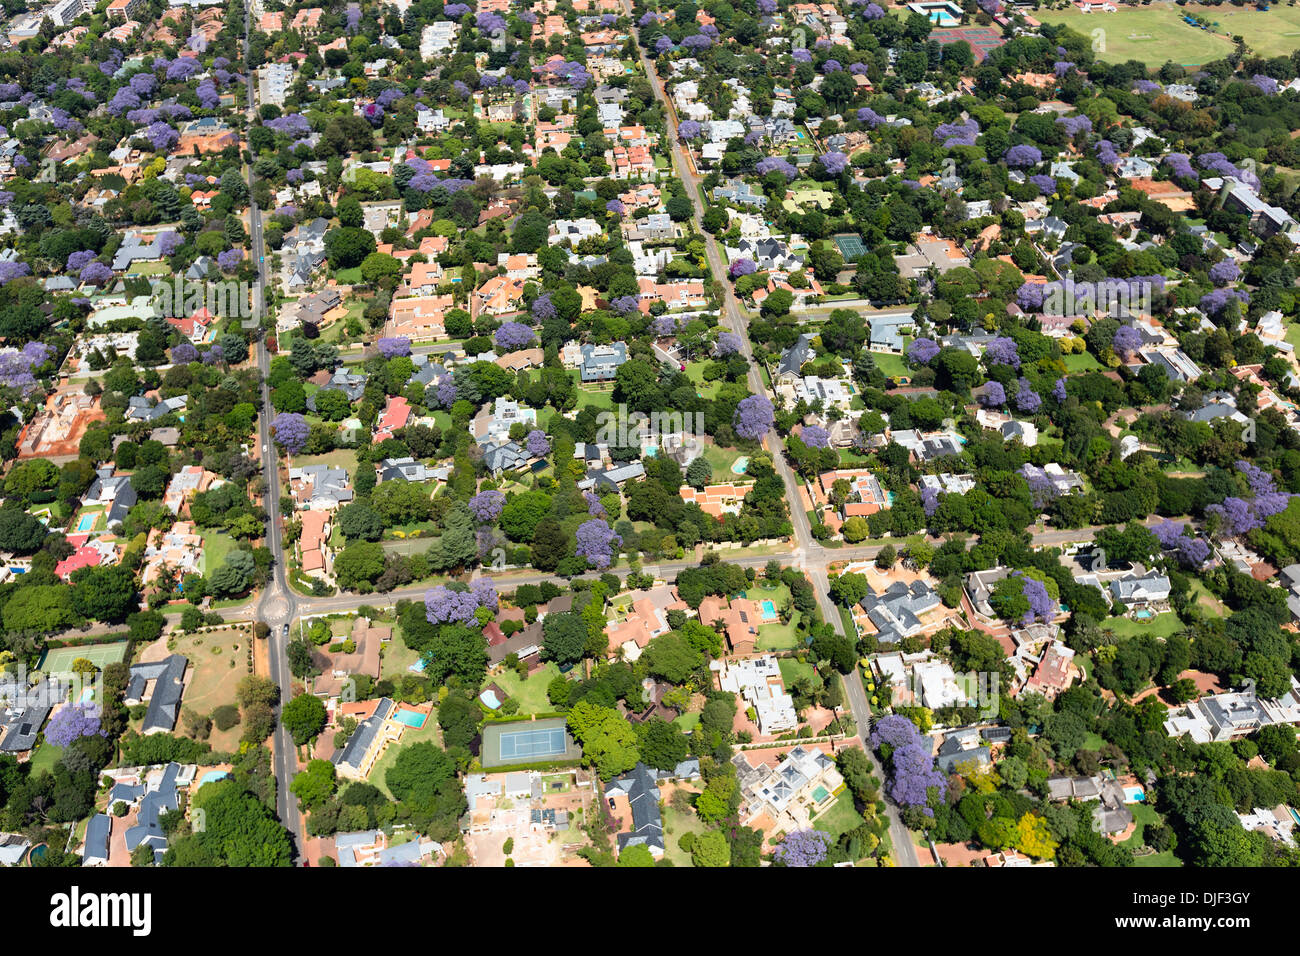 Vista aerea di alberi di jacaranda in fiore,sobborghi di Johannesburg, il che la rende una delle città più verdi del mondo.Sud Africa Foto Stock